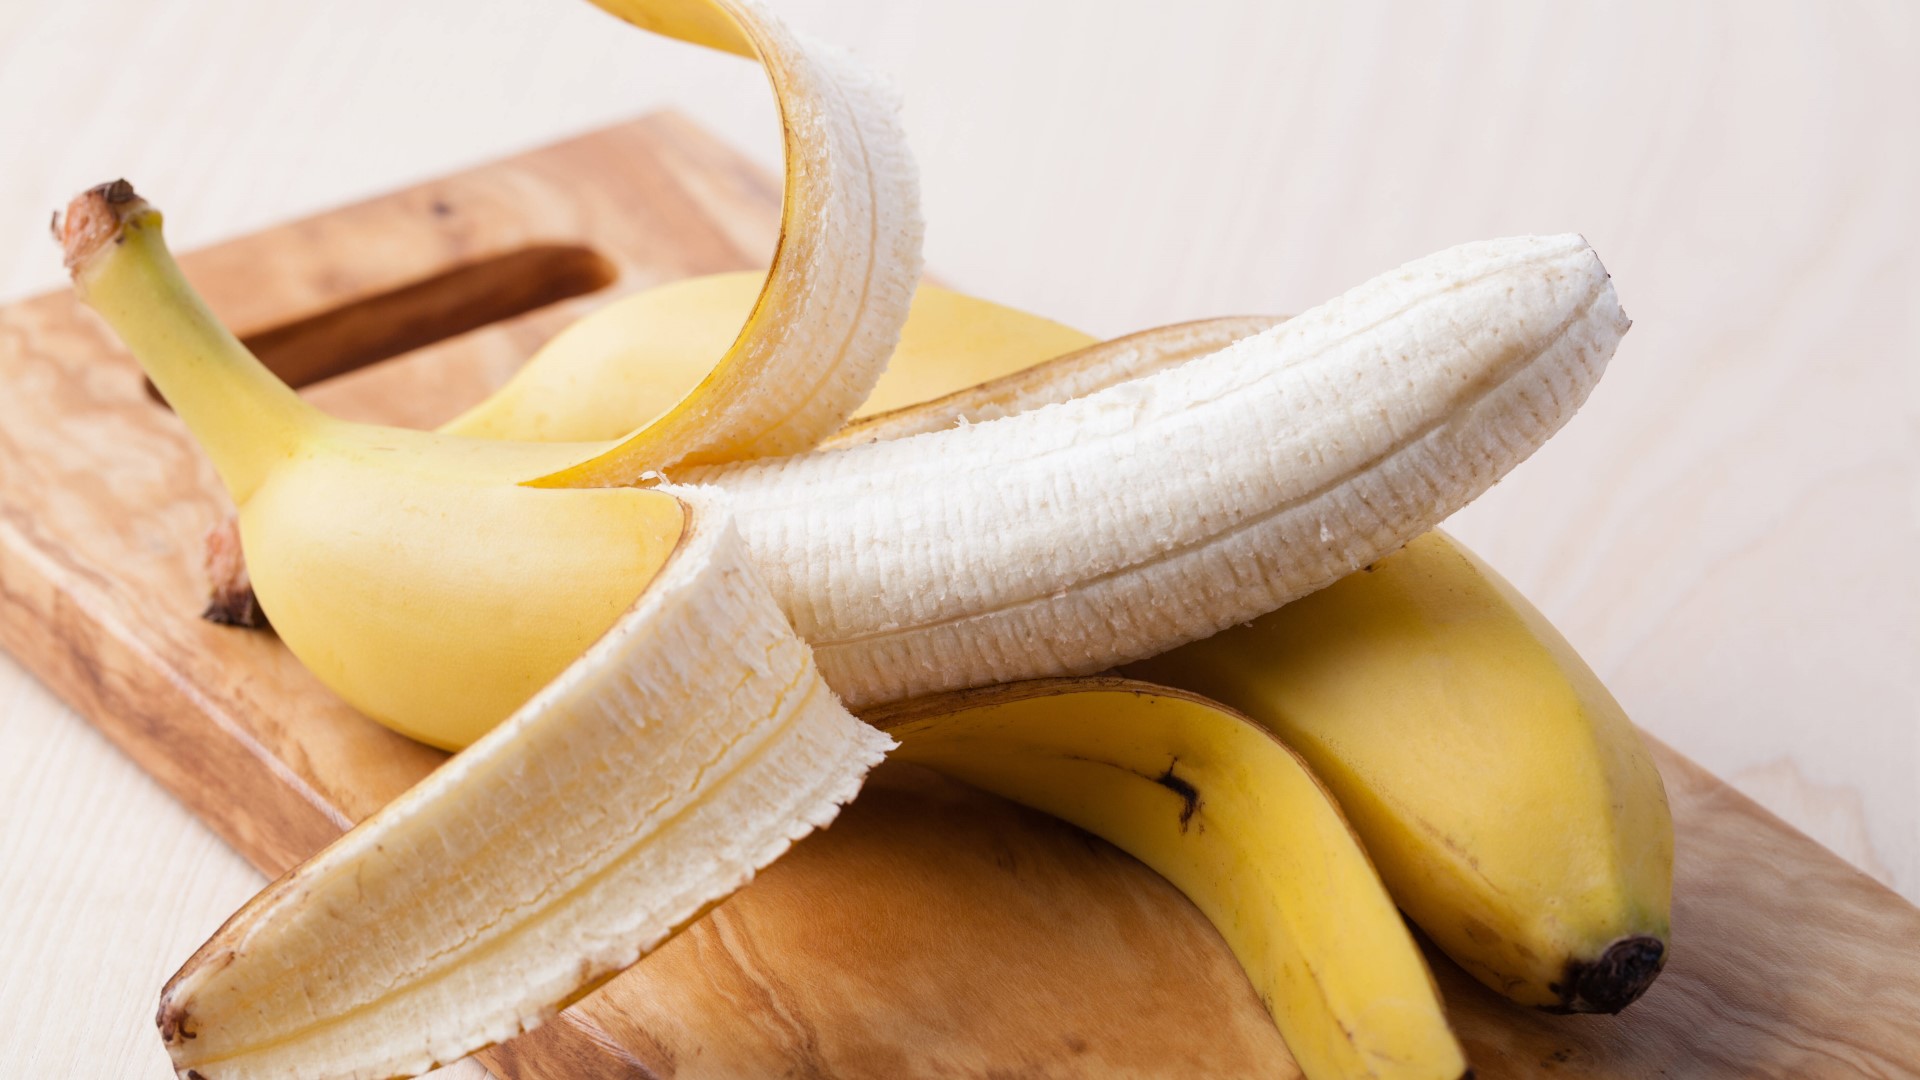 Банановая кожура как удобрение для комнатных растений и огорода